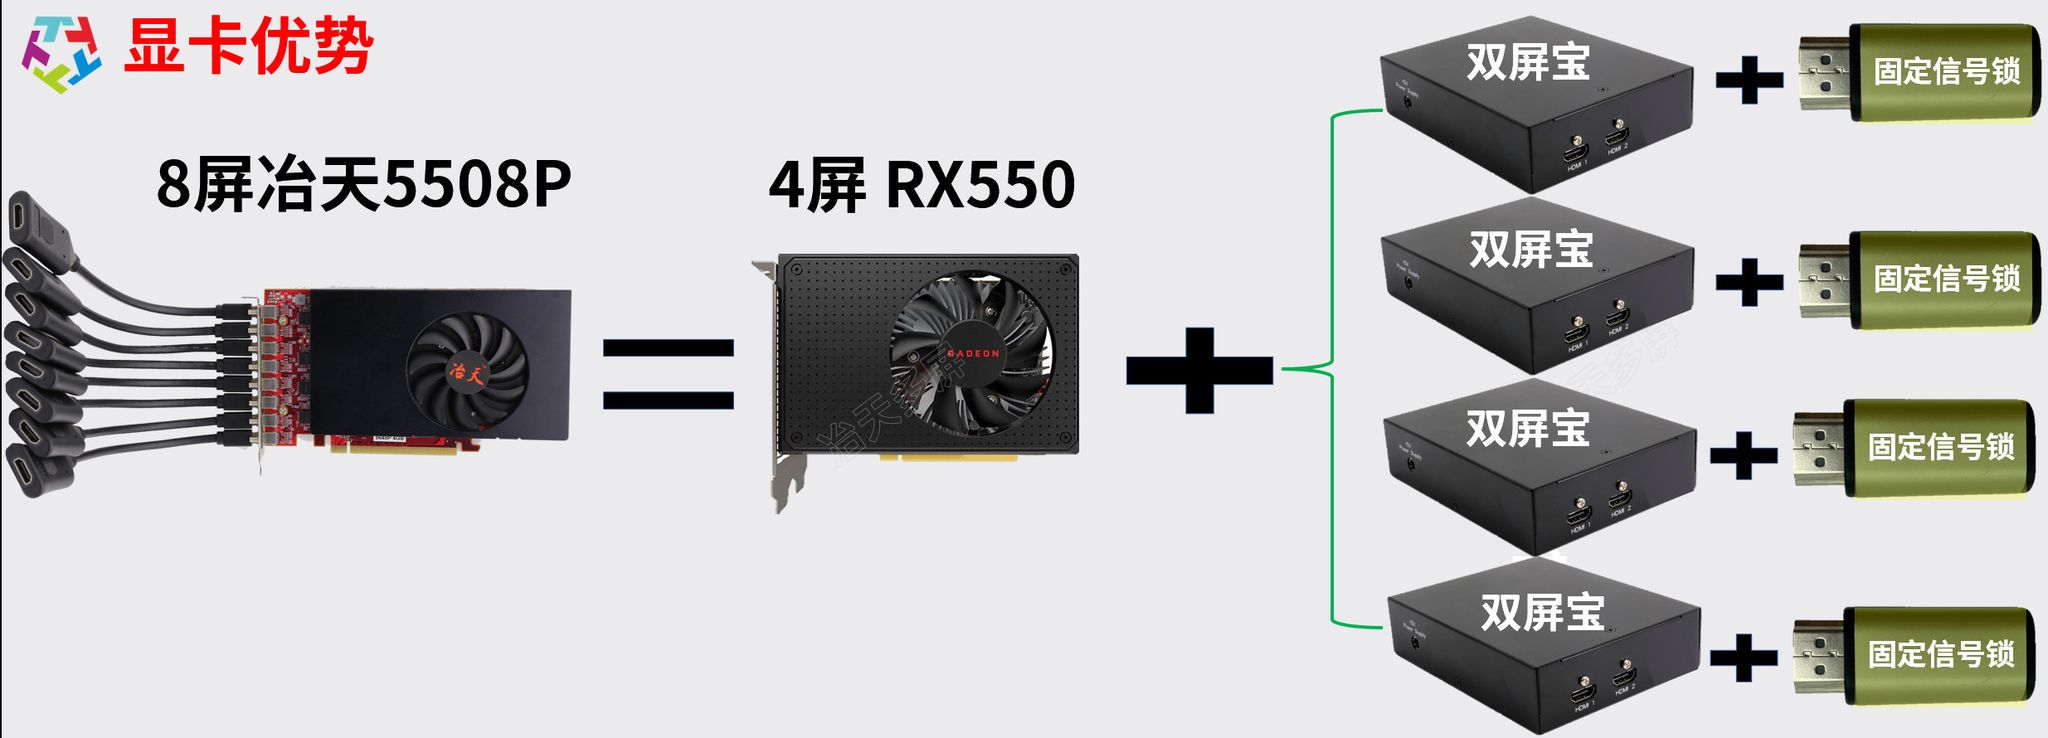 AMD芯片RX550冶天8屏显卡5508P